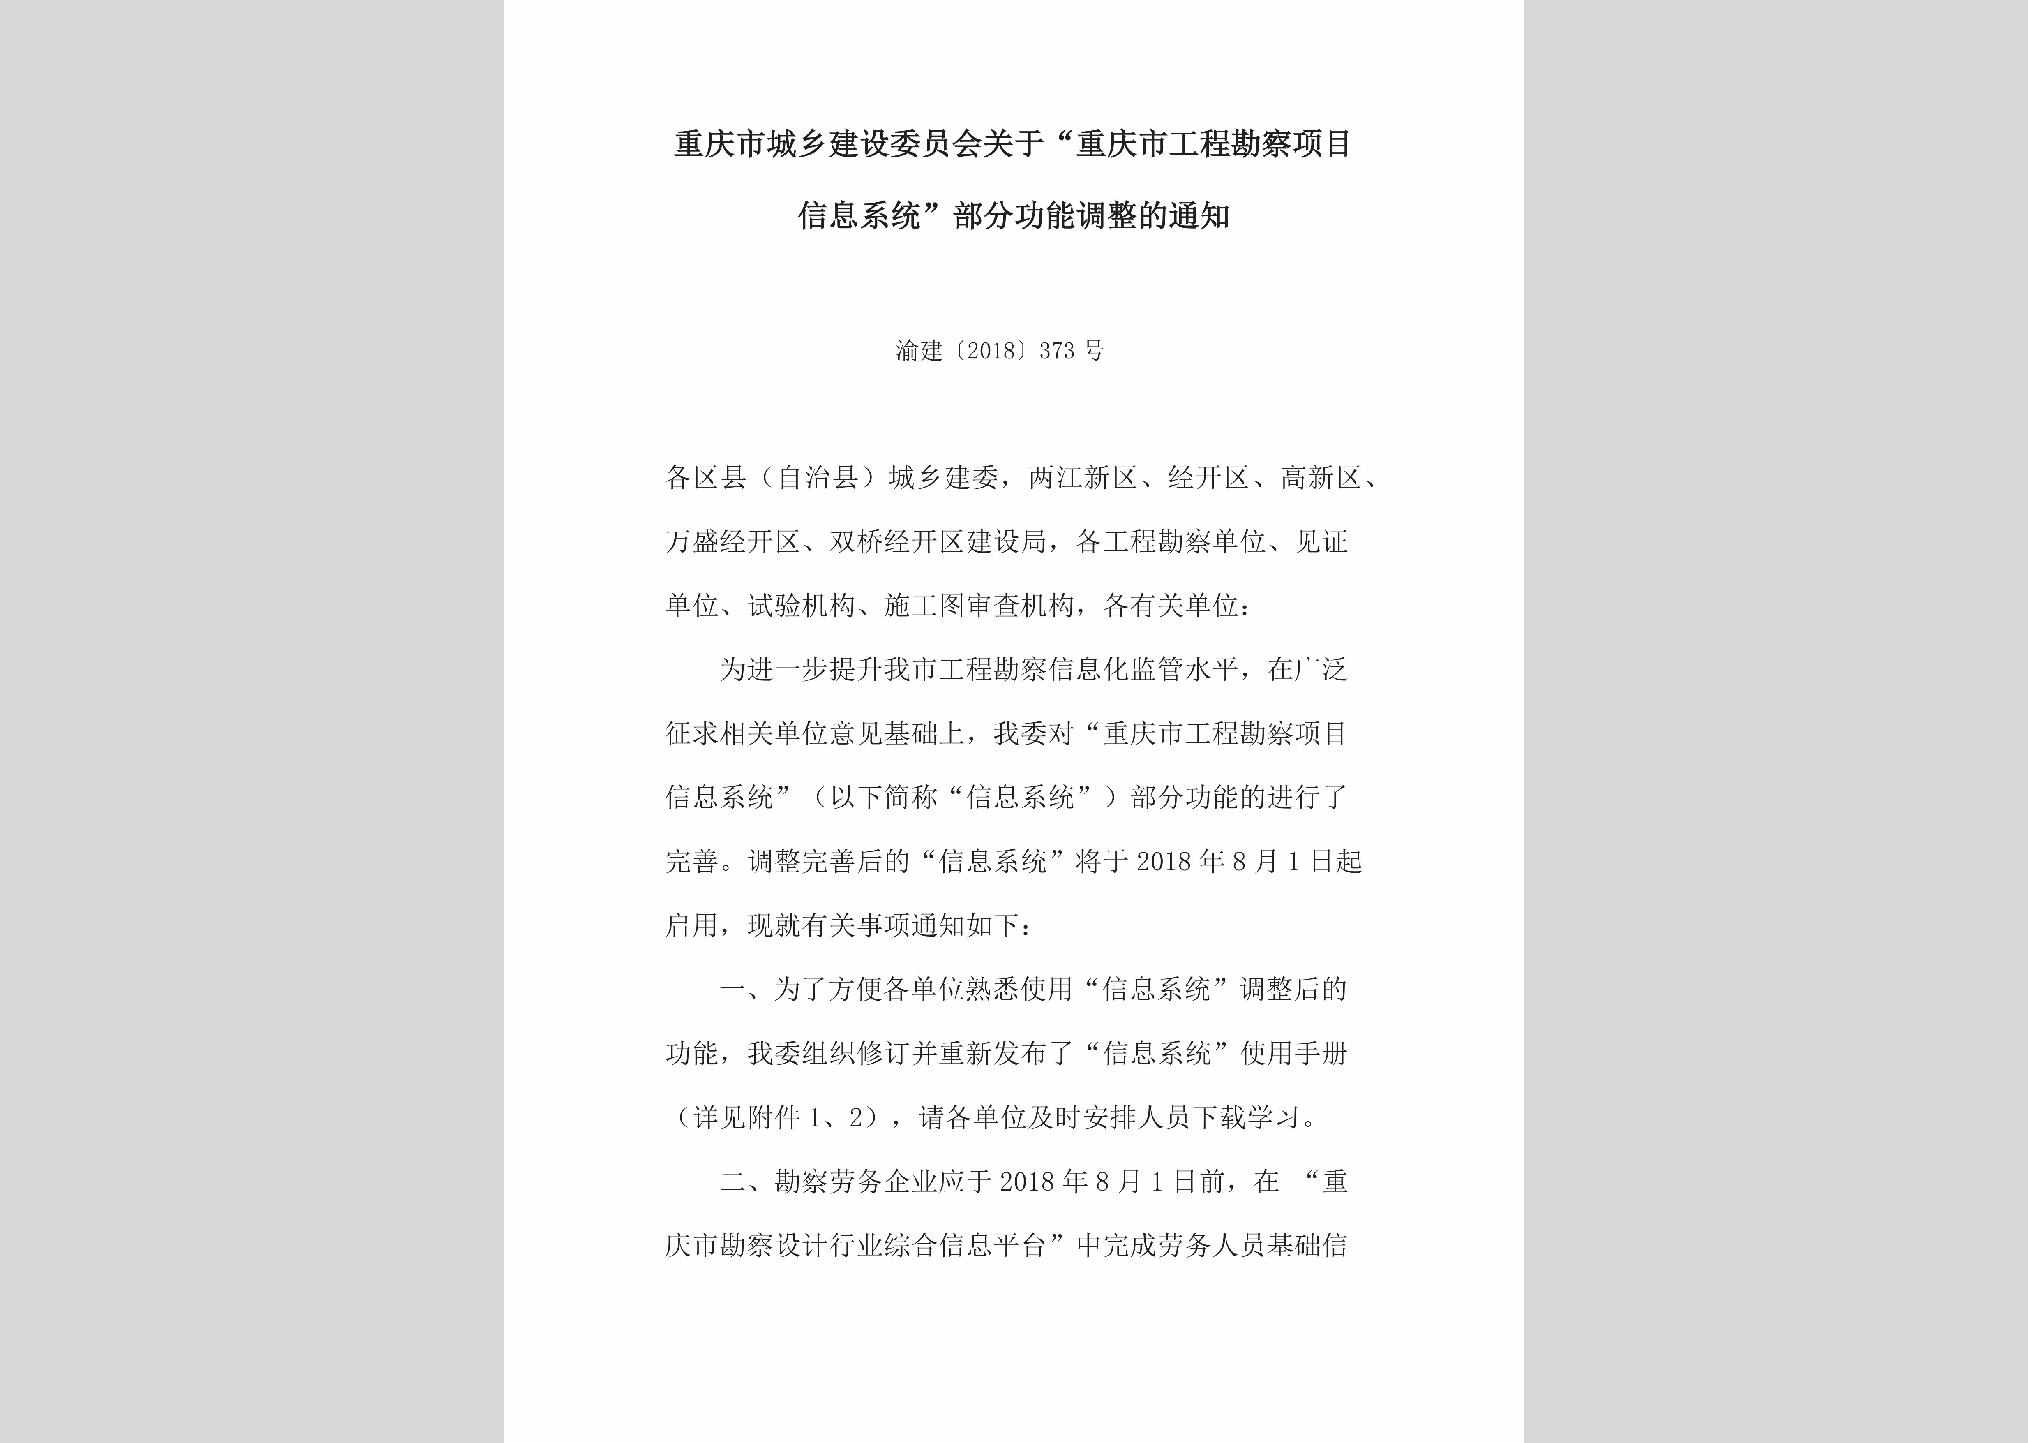 渝建[2018]373号：关于“重庆市工程勘察项目信息系统”部分功能调整的通知